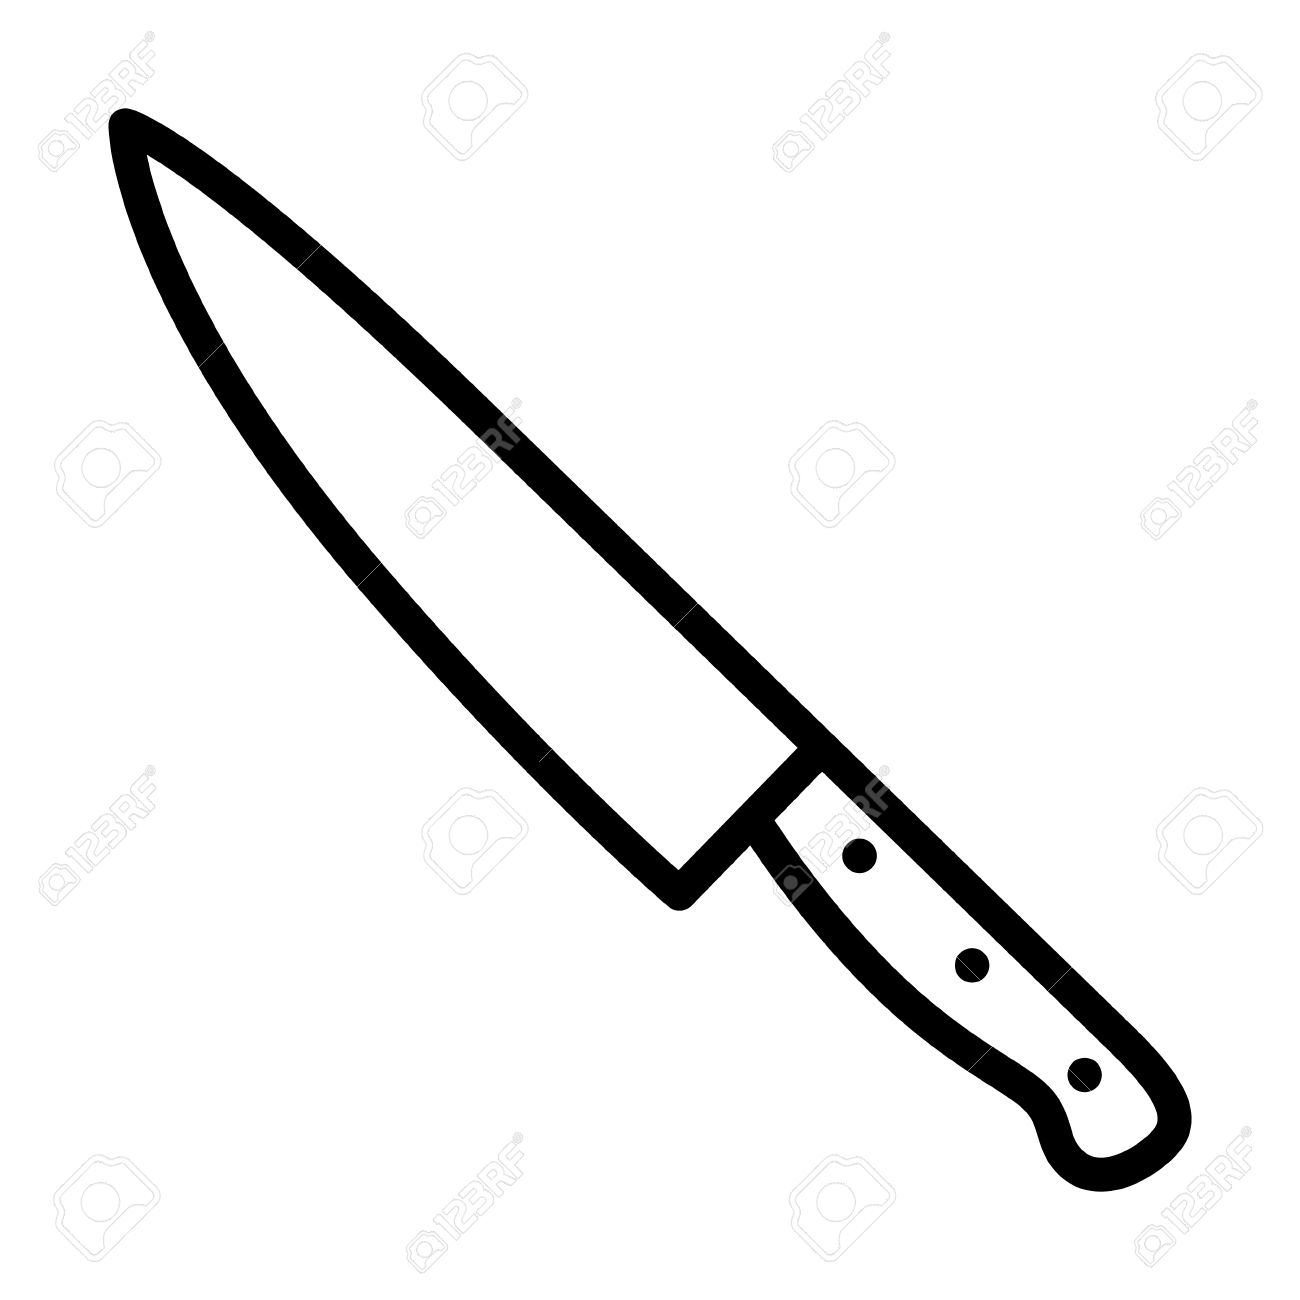 Khife clipart kitchen knife #6